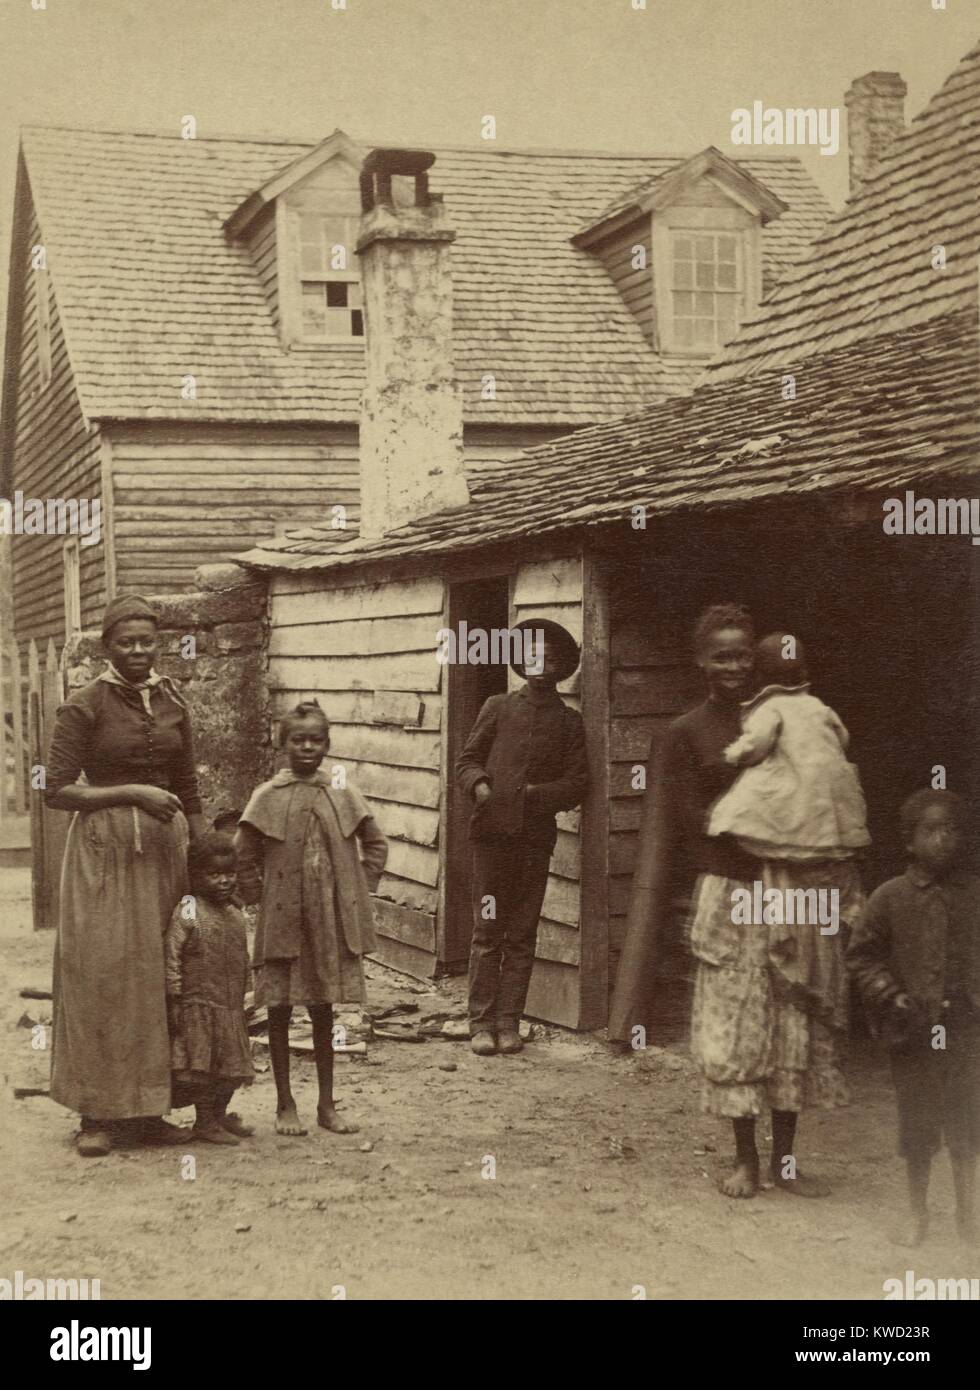 Ritratto di una famiglia americana africana in piedi di fronte a una casa, Sant'Agostino, Florida, 1886. Foto di George Barker (BSLOC 2017 20 124) Foto Stock